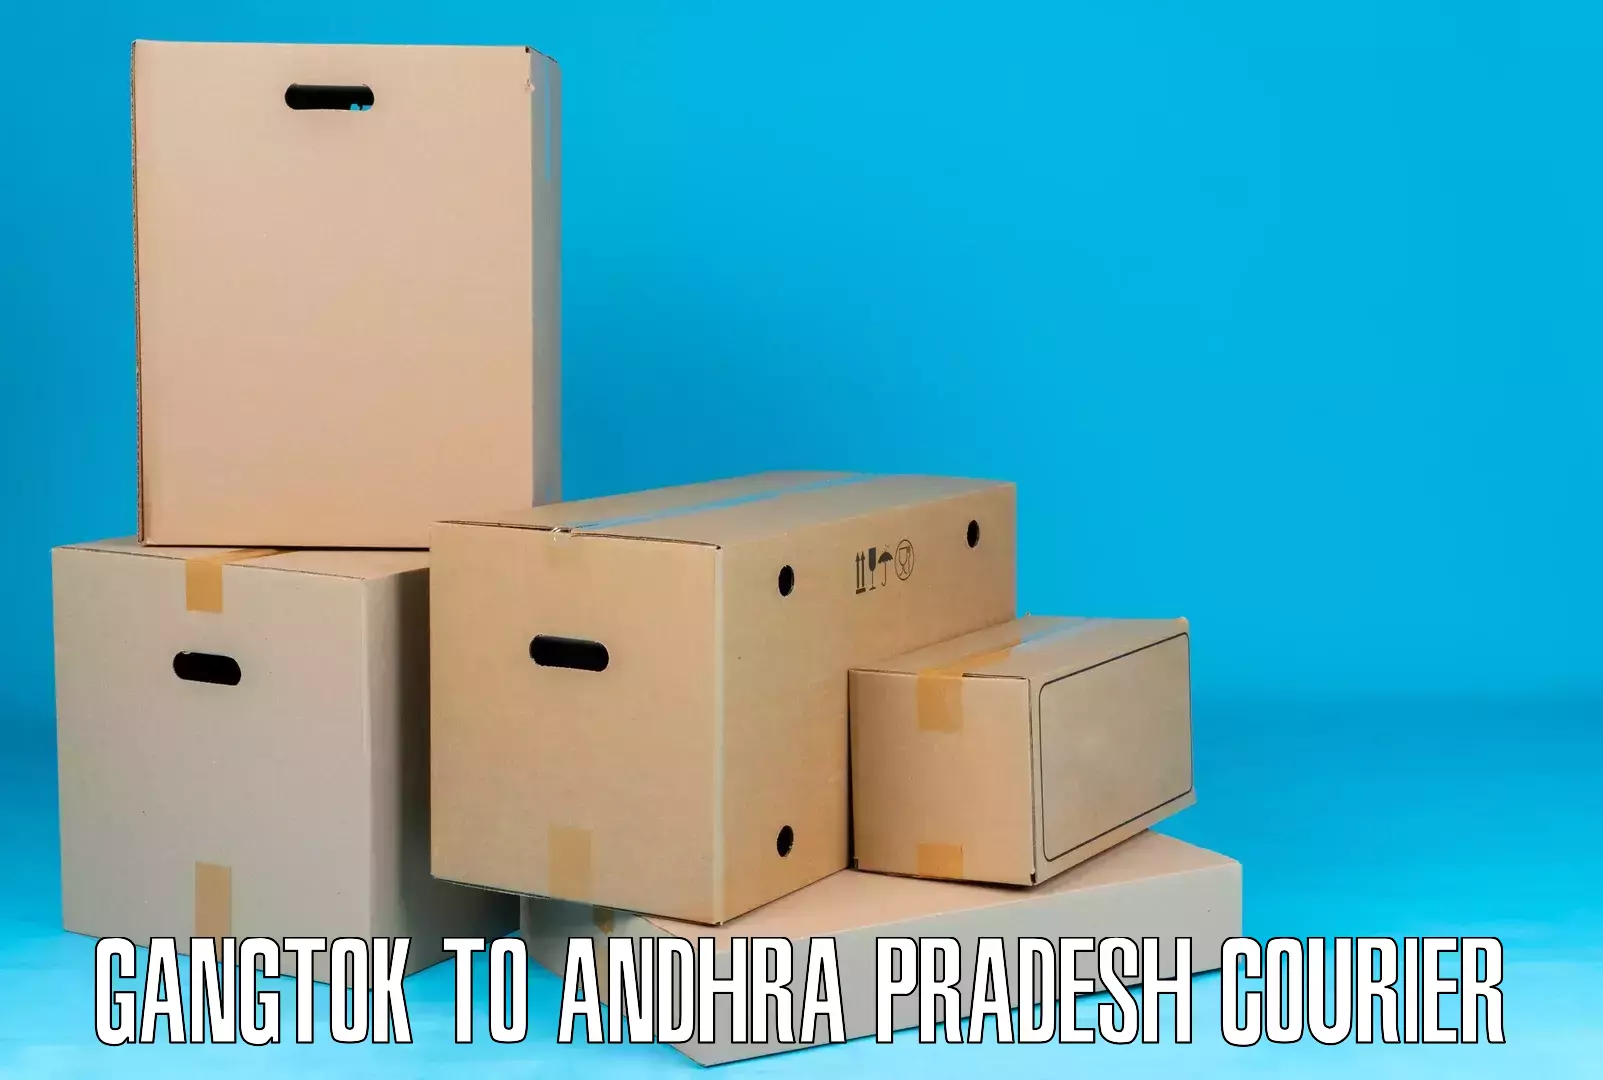 Efficient parcel delivery Gangtok to Gudur